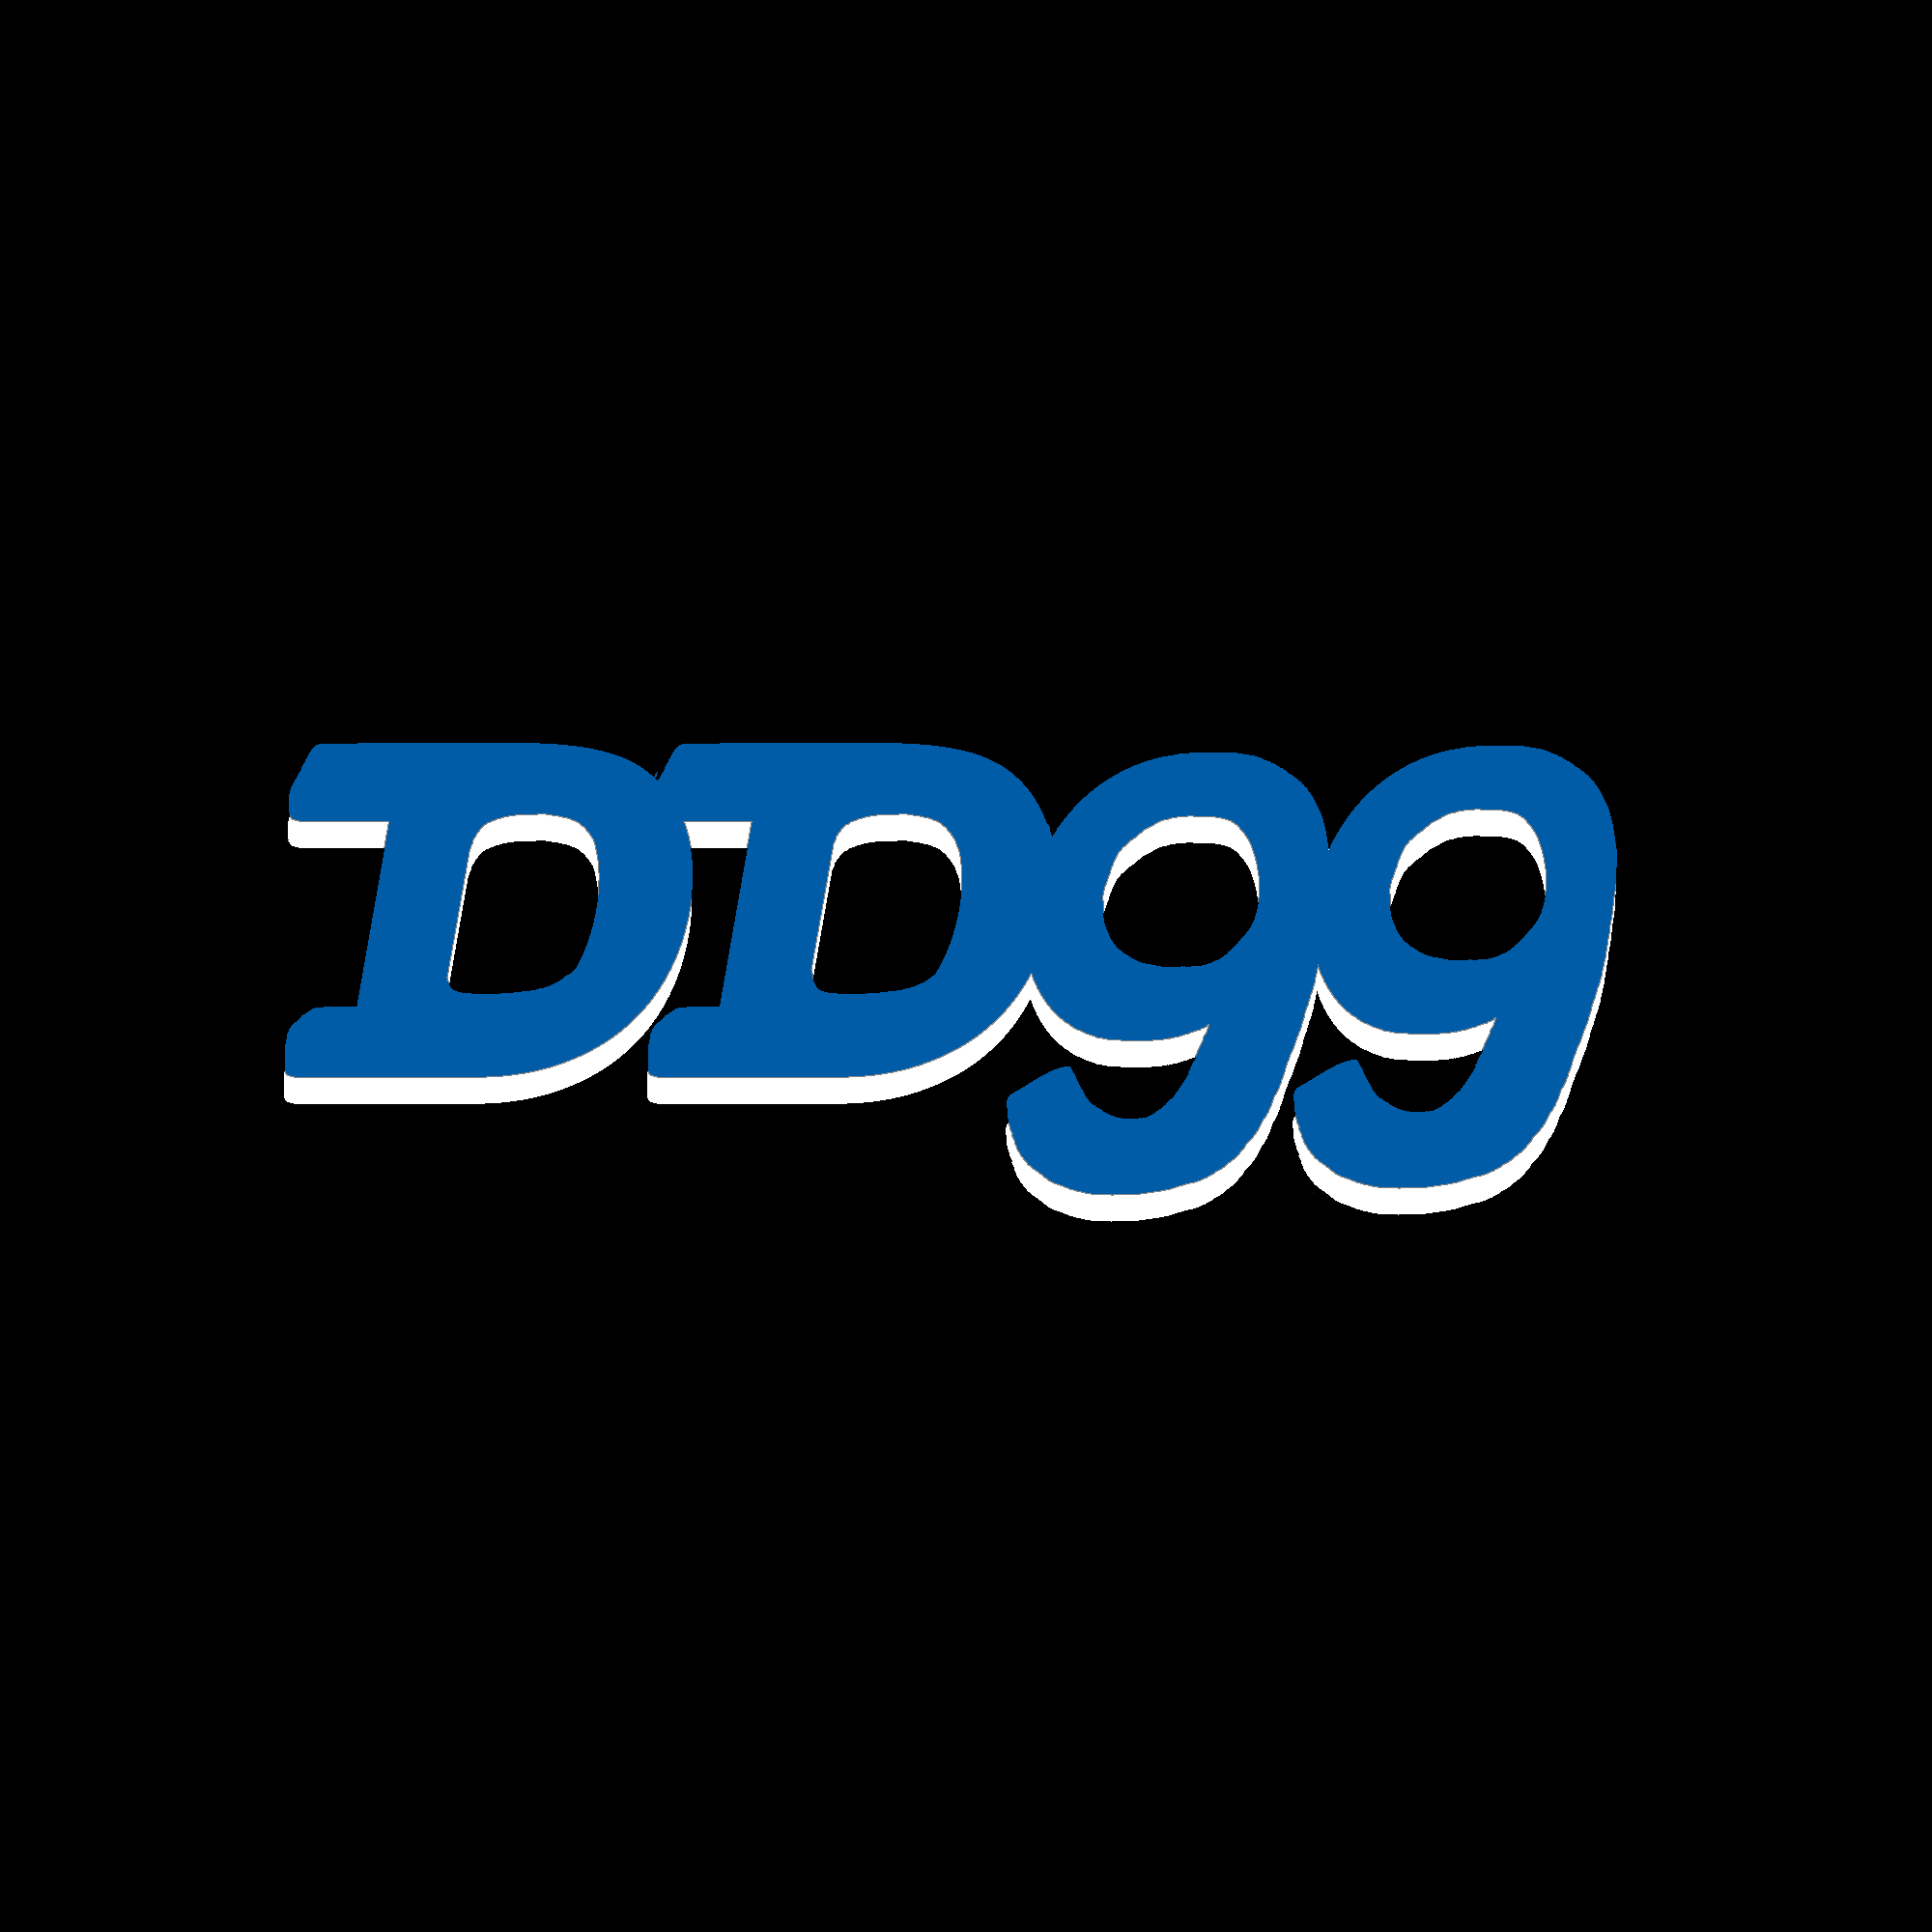 DD99 Casino Logo